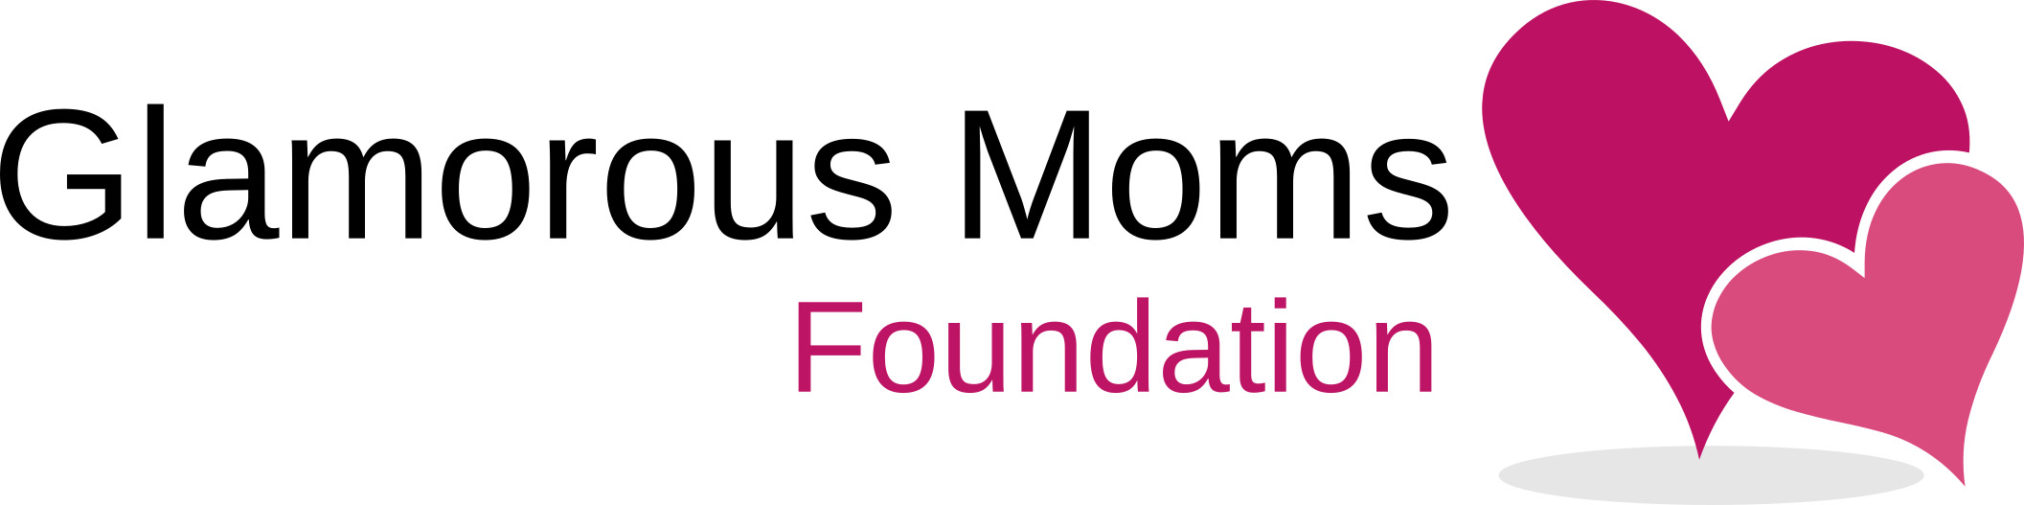 Glamorous Moms Foundation